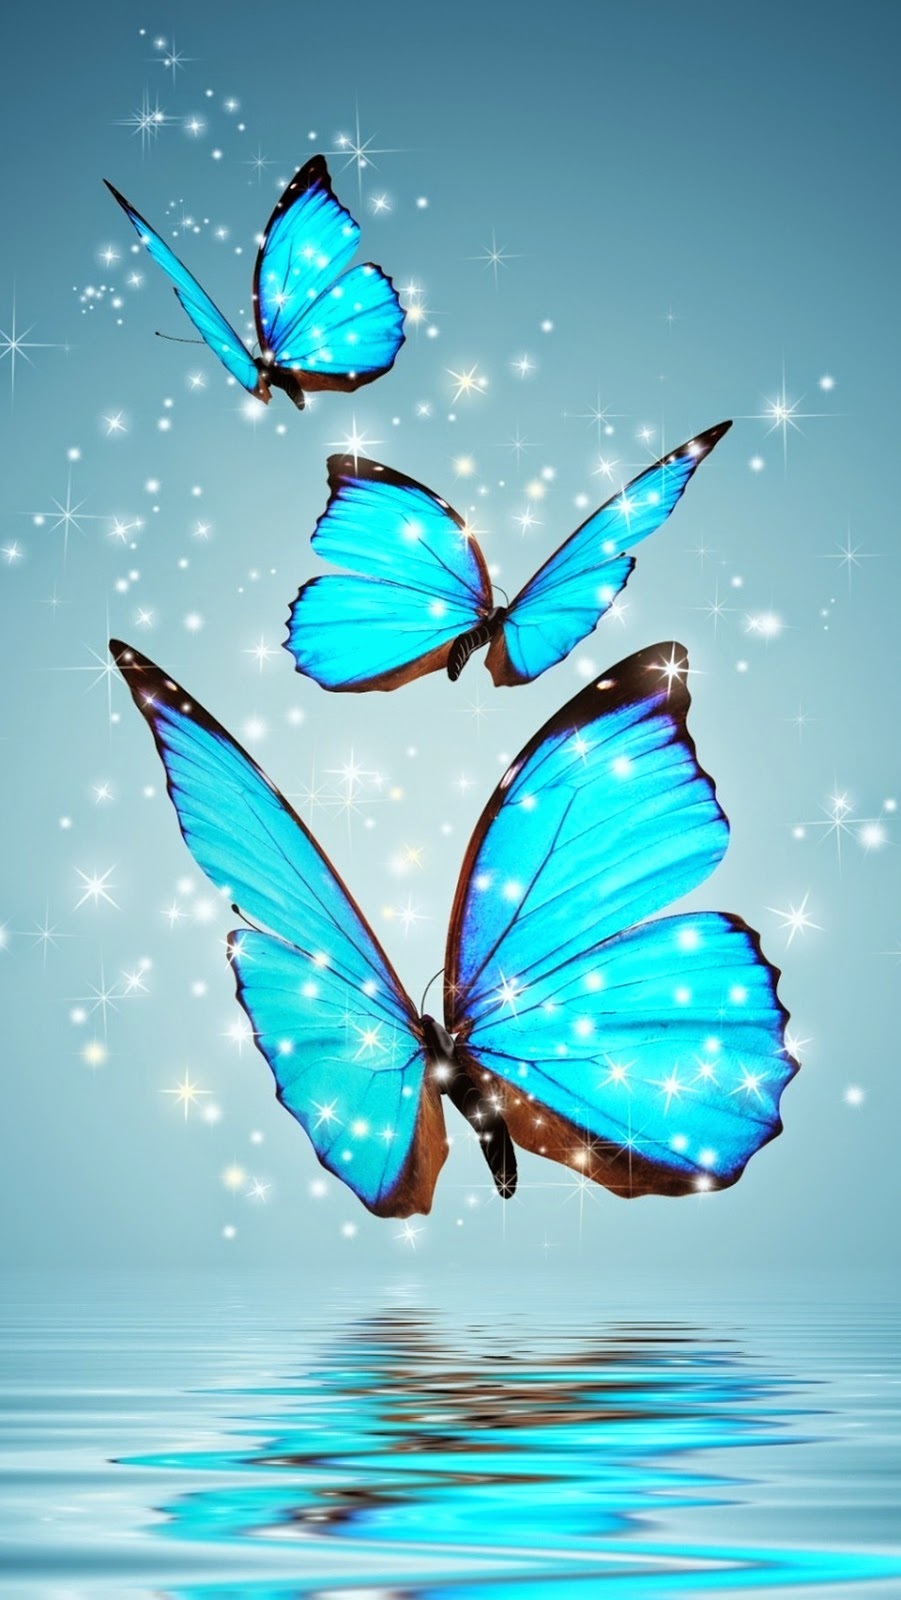 wallpaper hd per il download gratuito di dispositivi mobili,la farfalla,blu,insetto,falene e farfalle,turchese